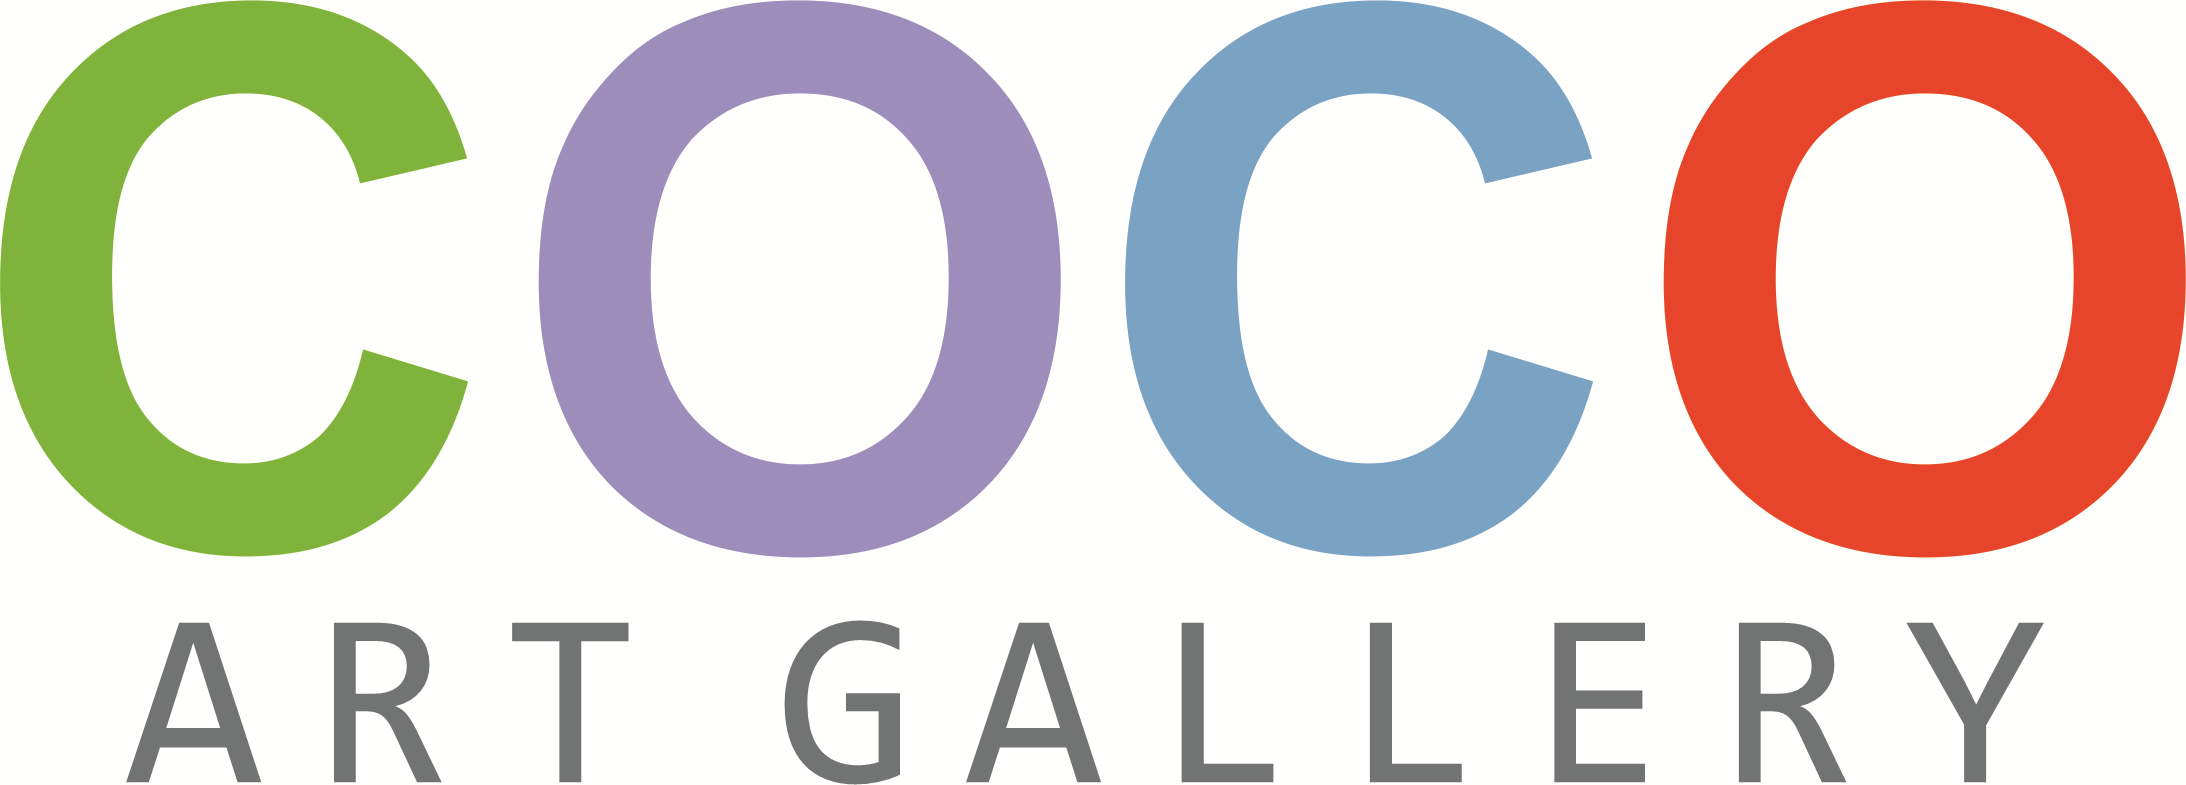 Coco Art Gallery Logo